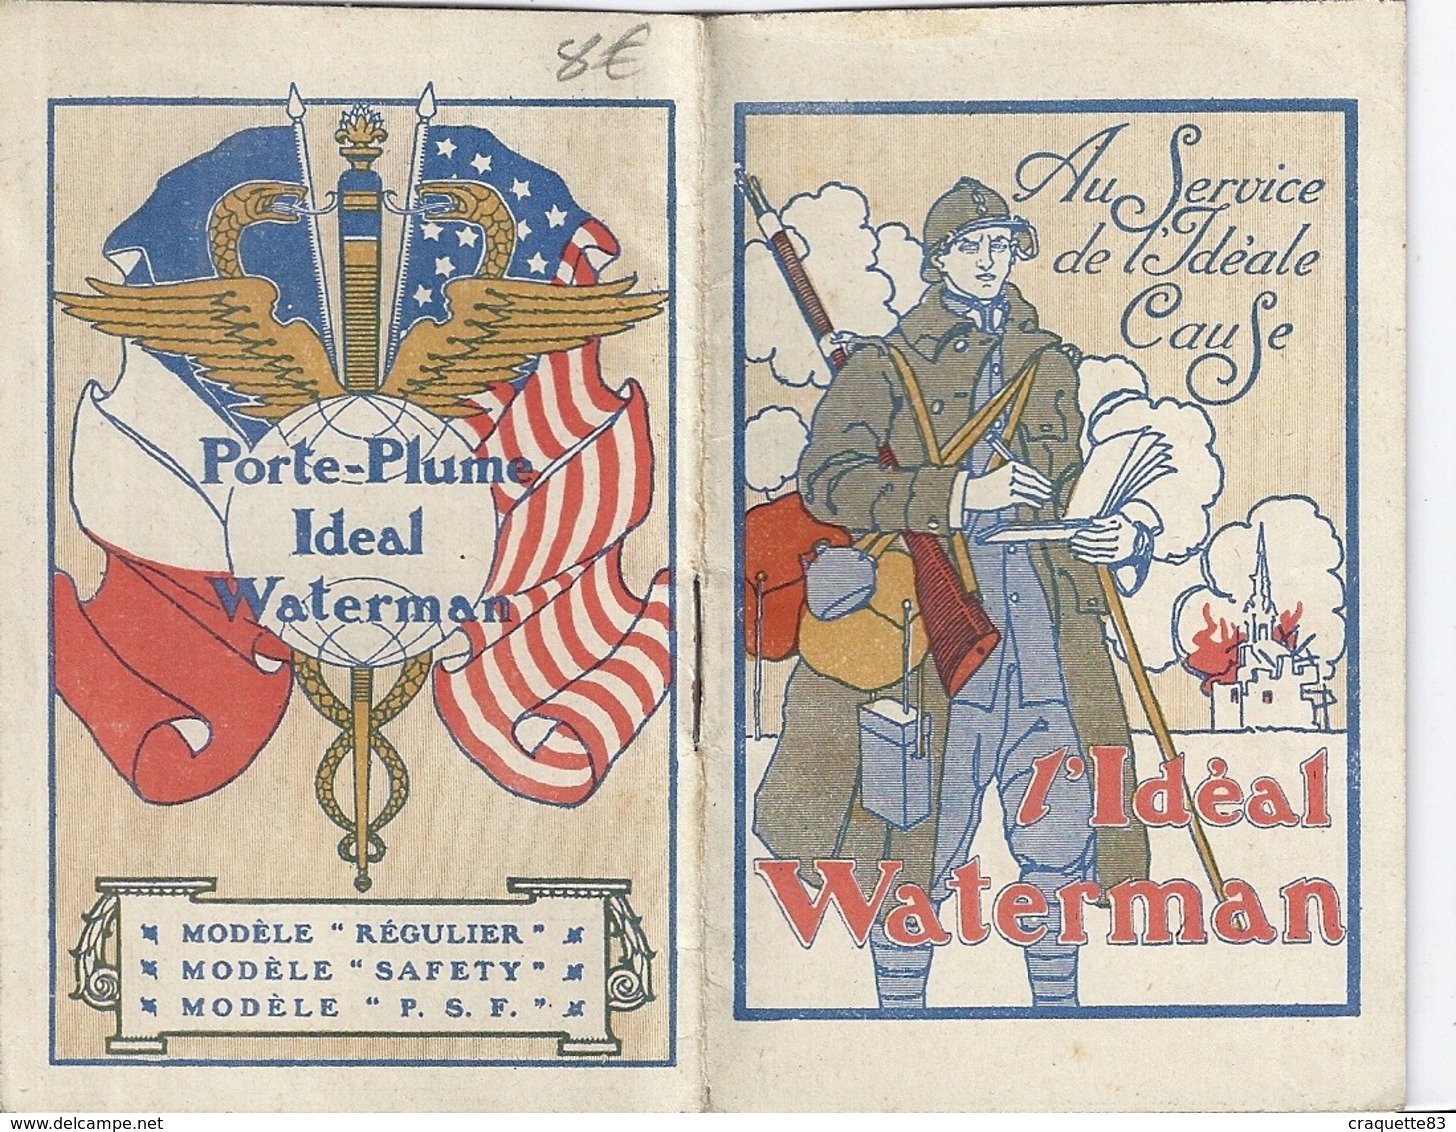 PUB - L'IDEAL WATERMAN  "AU SERVICE DE L'IDEALE CAUSE" 1918-CARNET ET CALENDRIER - Documenti